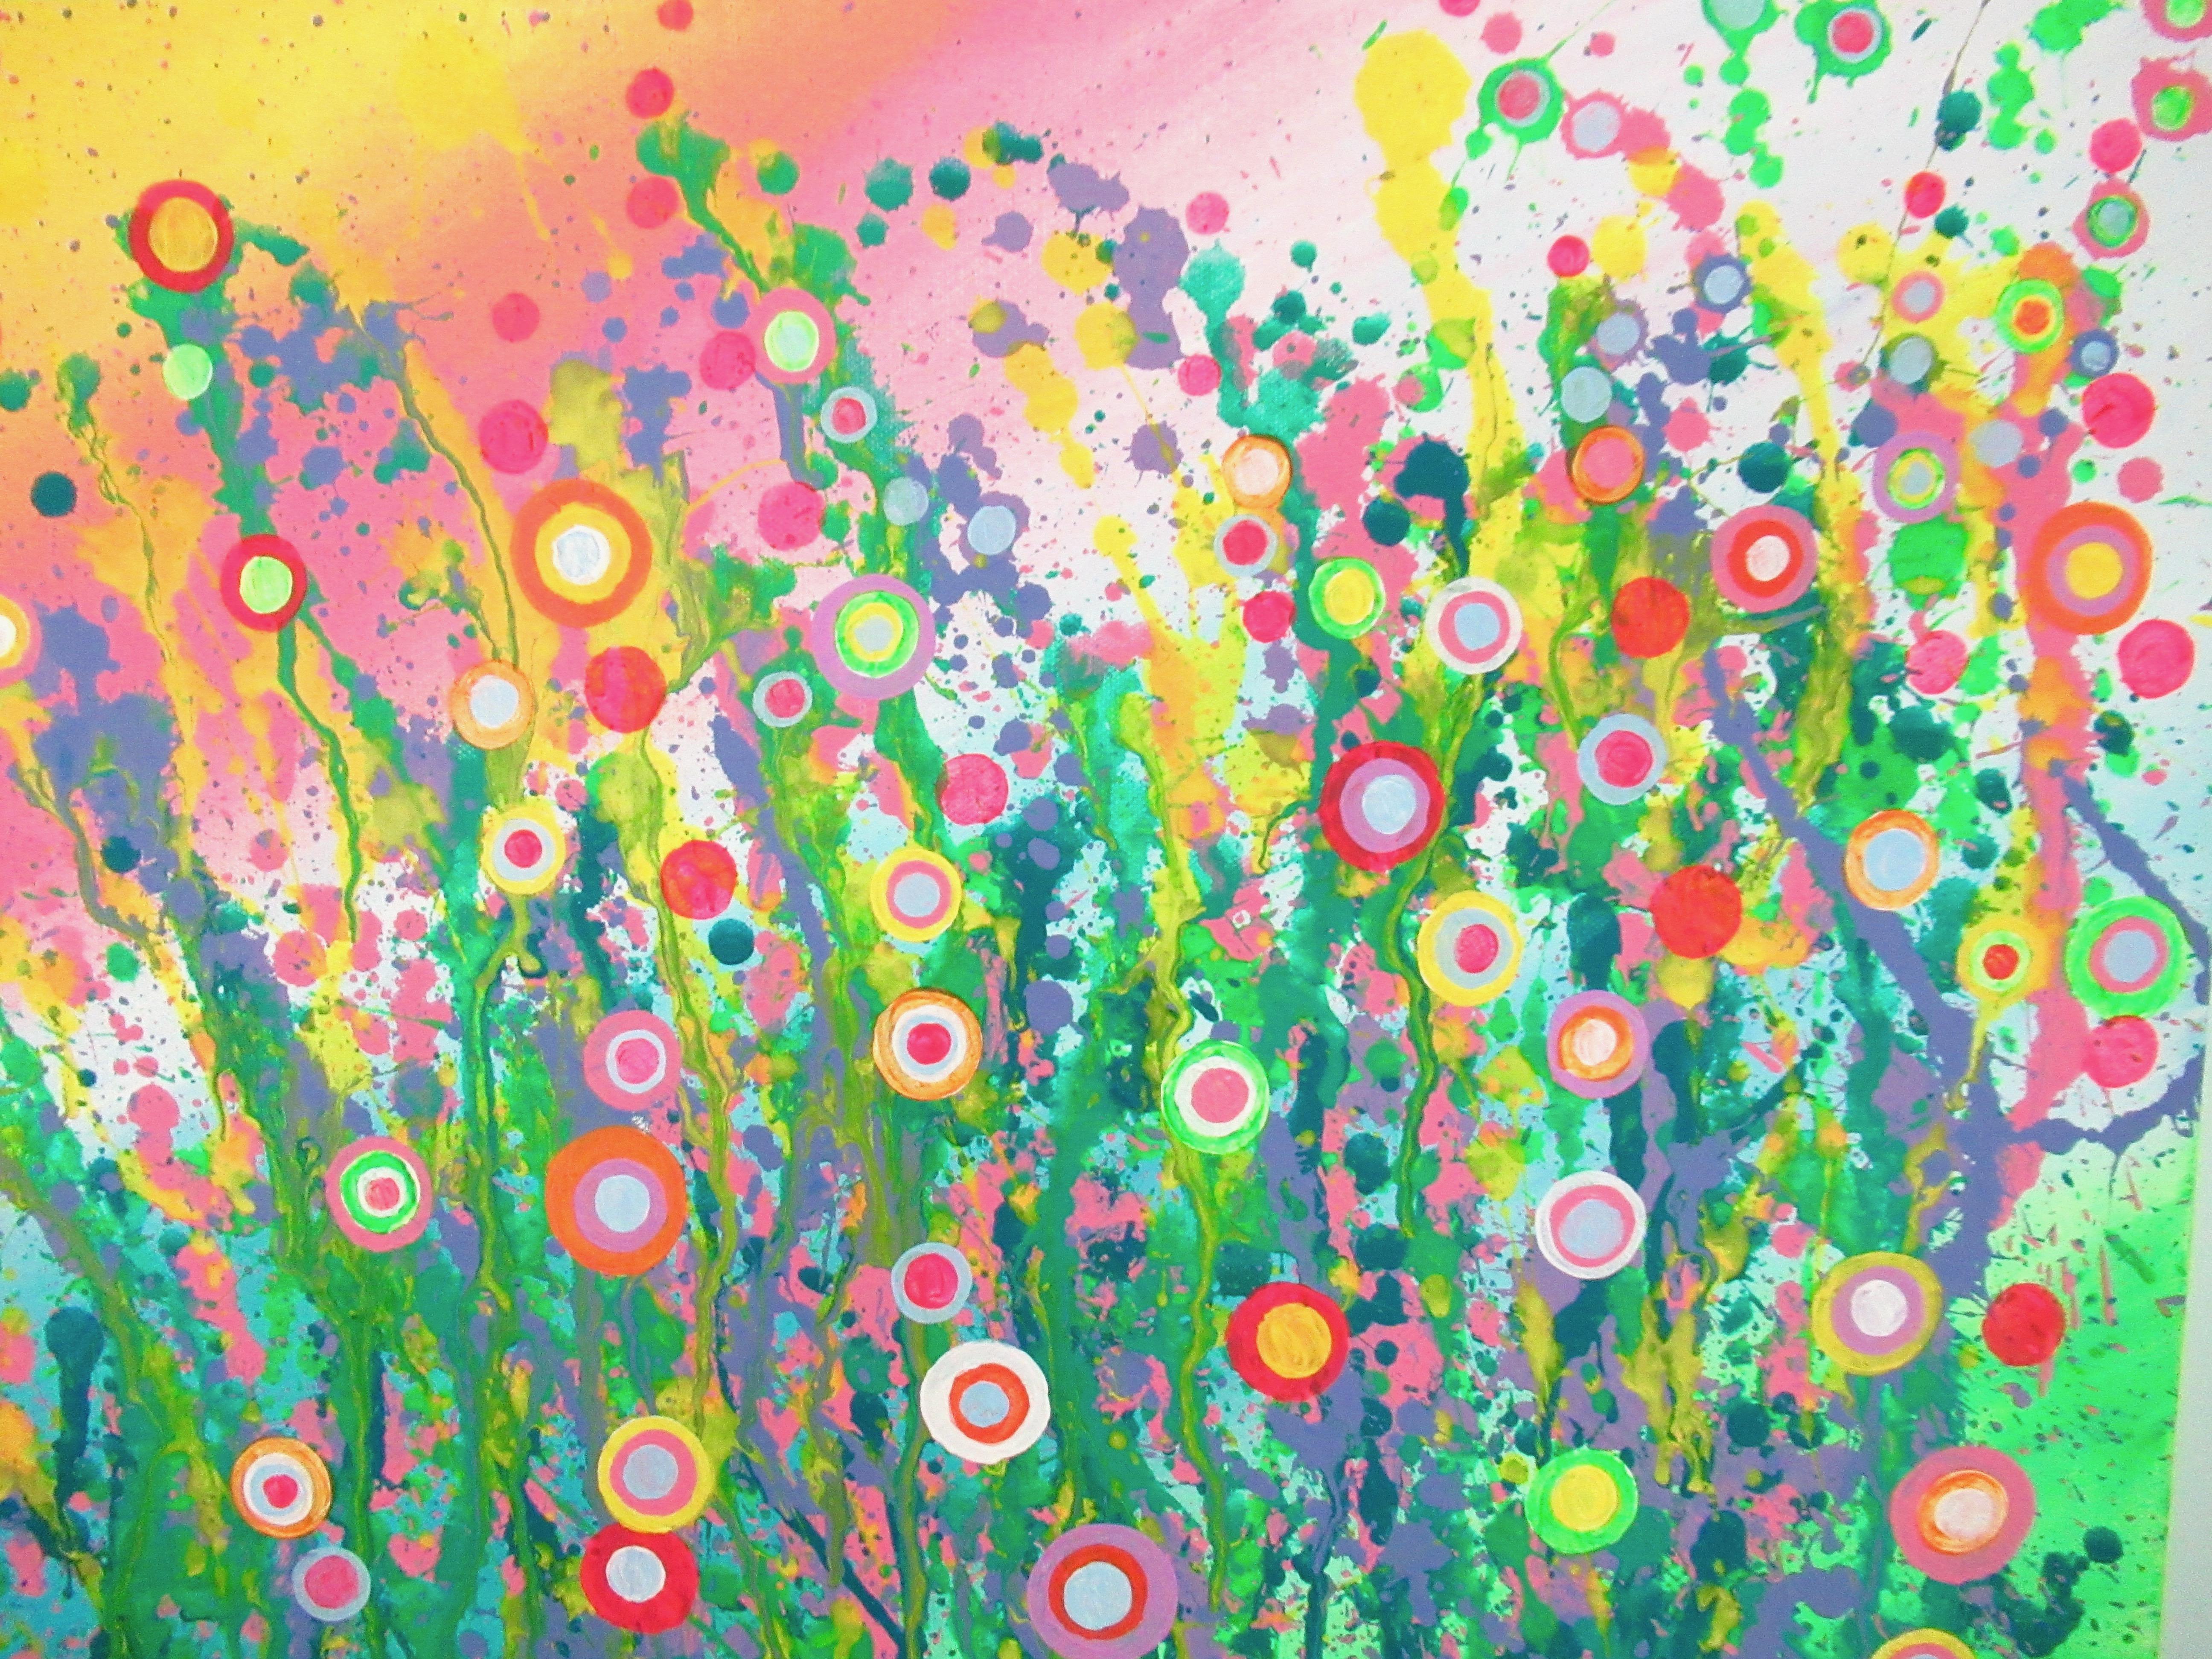 <p>Commentaires de l'artiste<br />Fait partie de la série des cercles de signature de Natasha. Abstraction géométrique libre du soleil se couchant sur un champ de fleurs. Le jaune chaud, le rose, le violet et les nuances de vert se réunissent dans